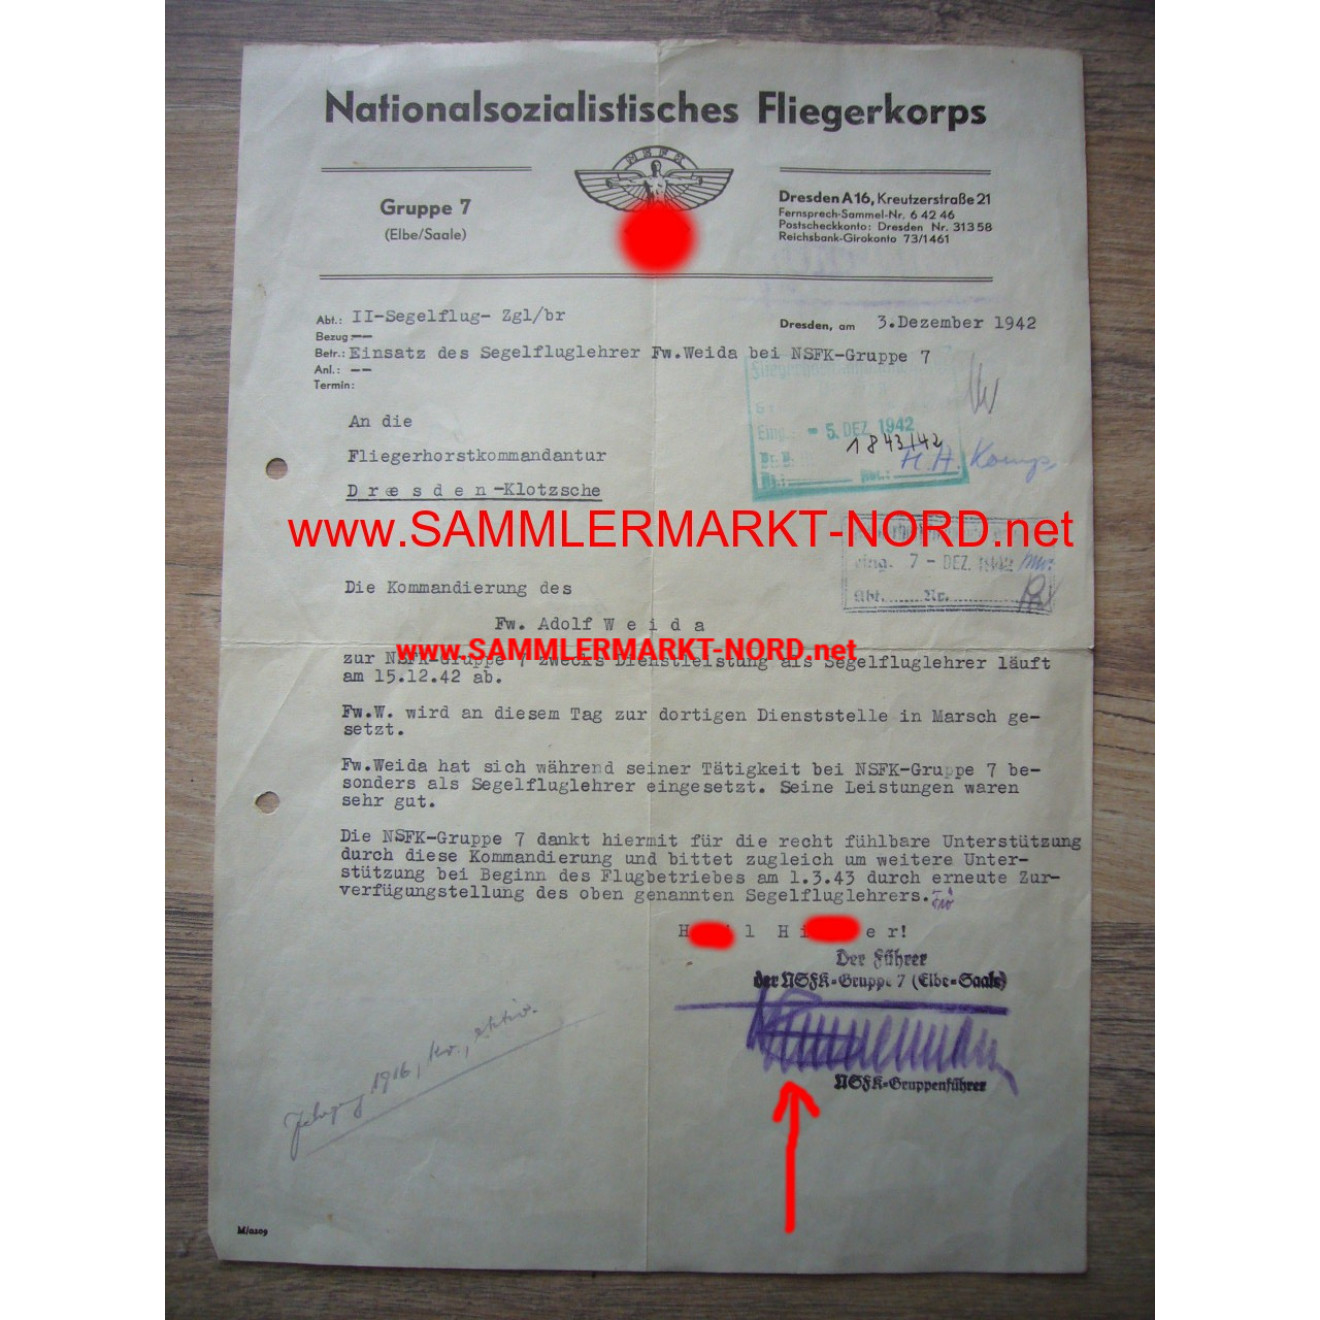 NSFK Gruppenführer OTTO ZIMMERMANN - autograph